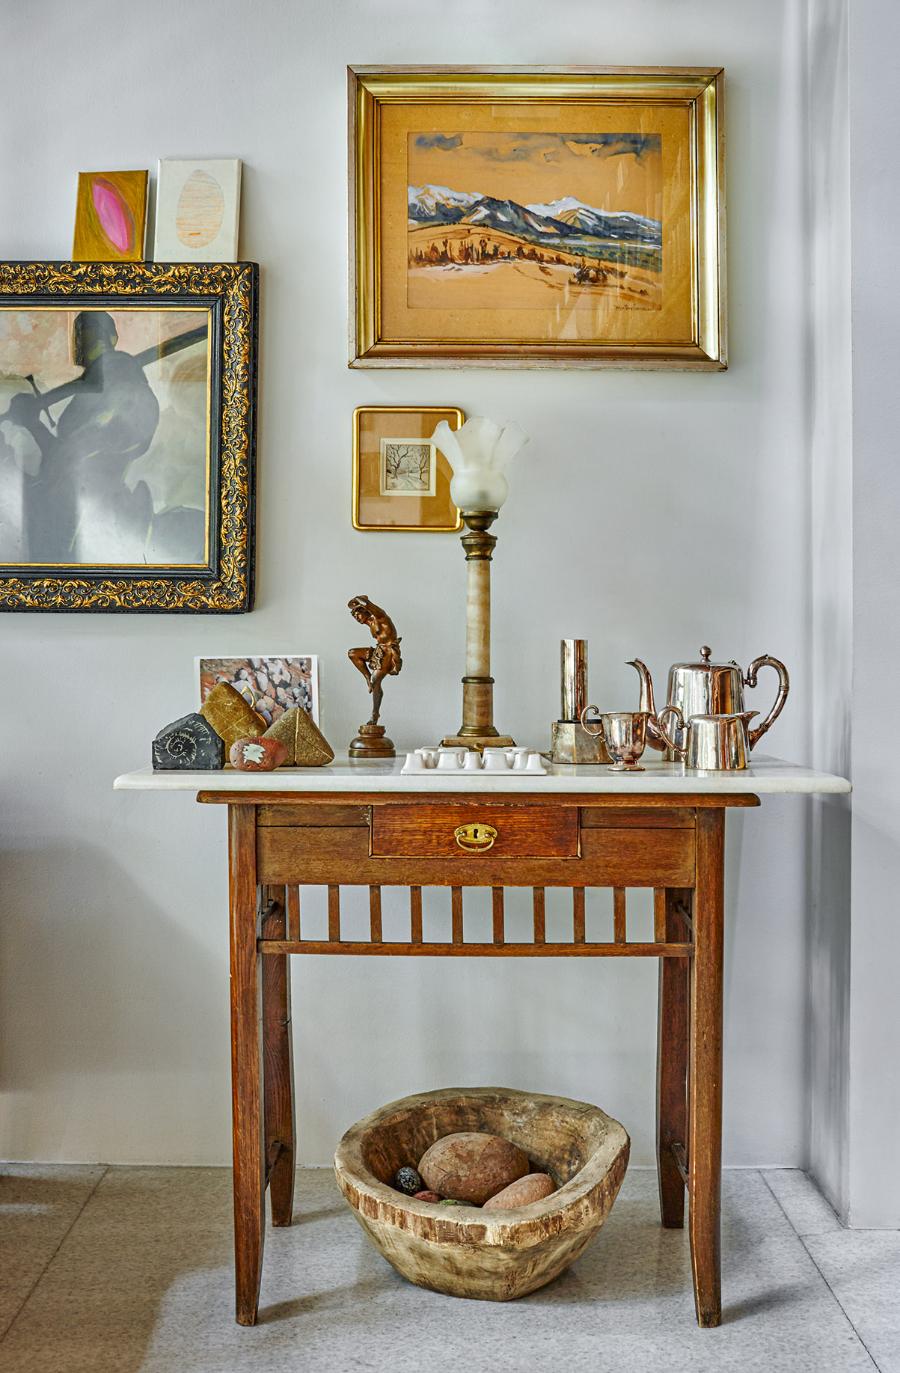 Na stoliku fragmenty srebrnej zastawy stołowej – rodzinnej pamiątki (Fot. Celestyna Król)